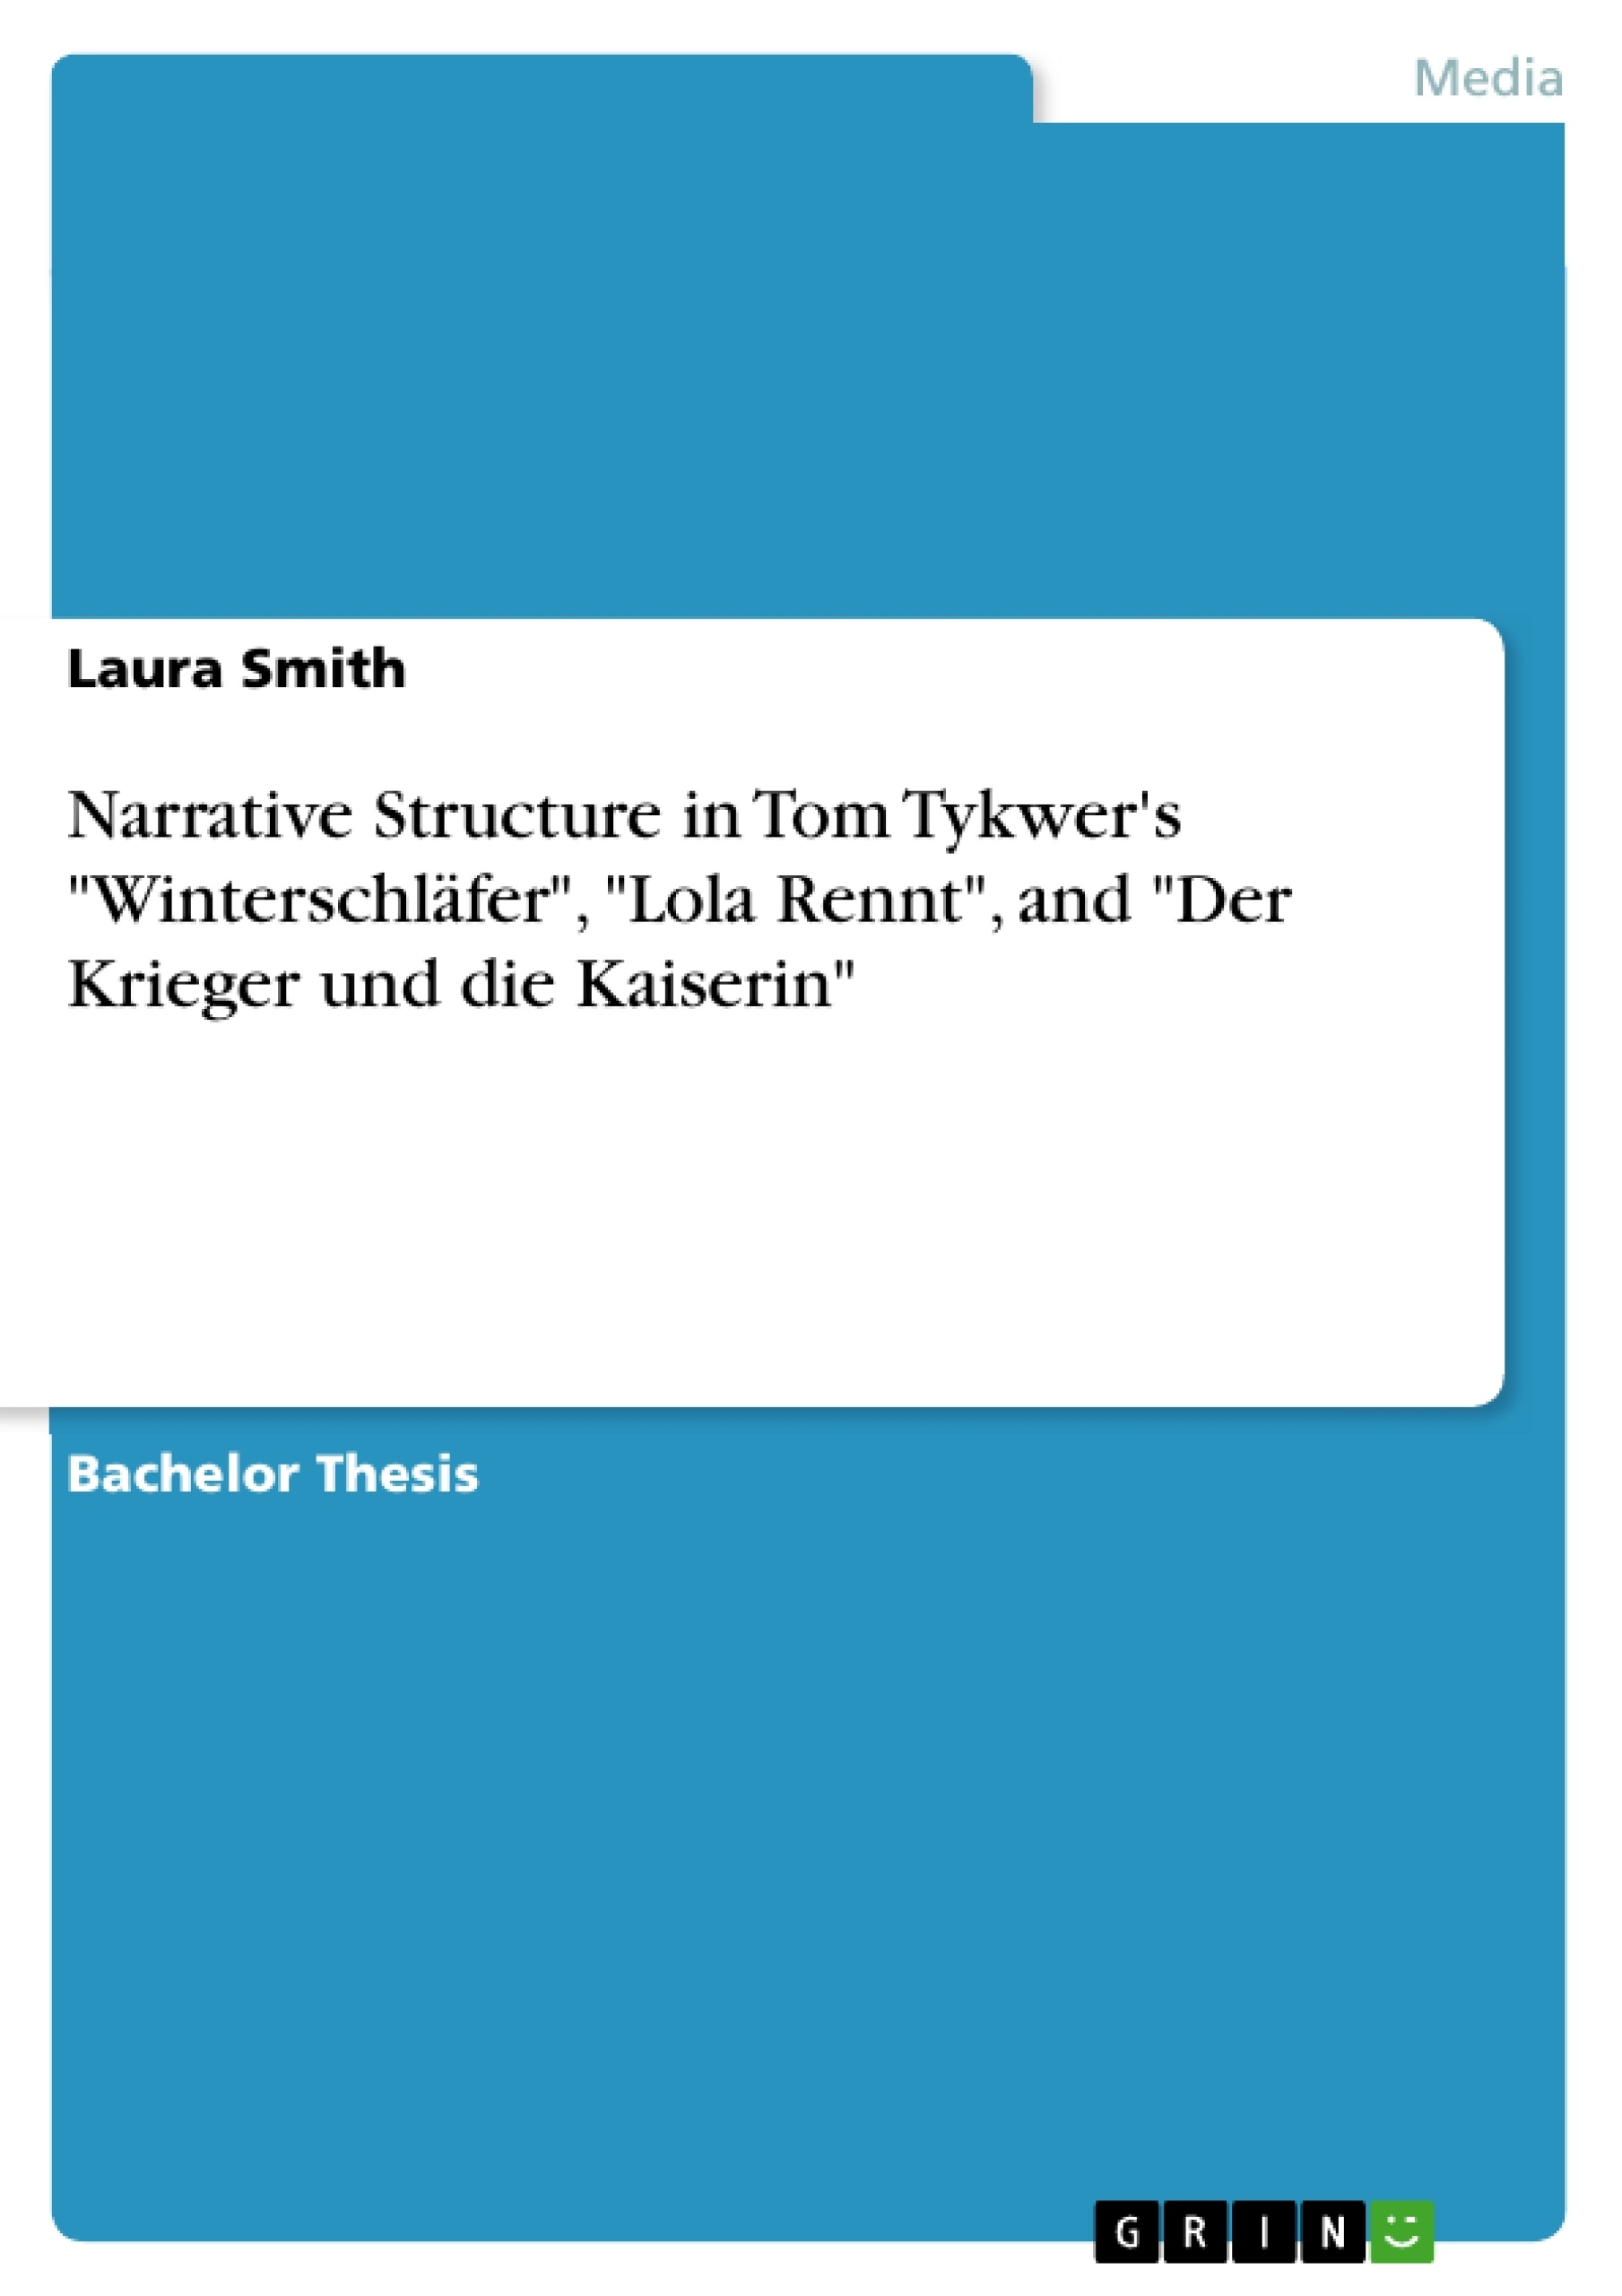 Title: Narrative Structure in Tom Tykwer's "Winterschläfer", "Lola Rennt", and "Der Krieger und die Kaiserin"